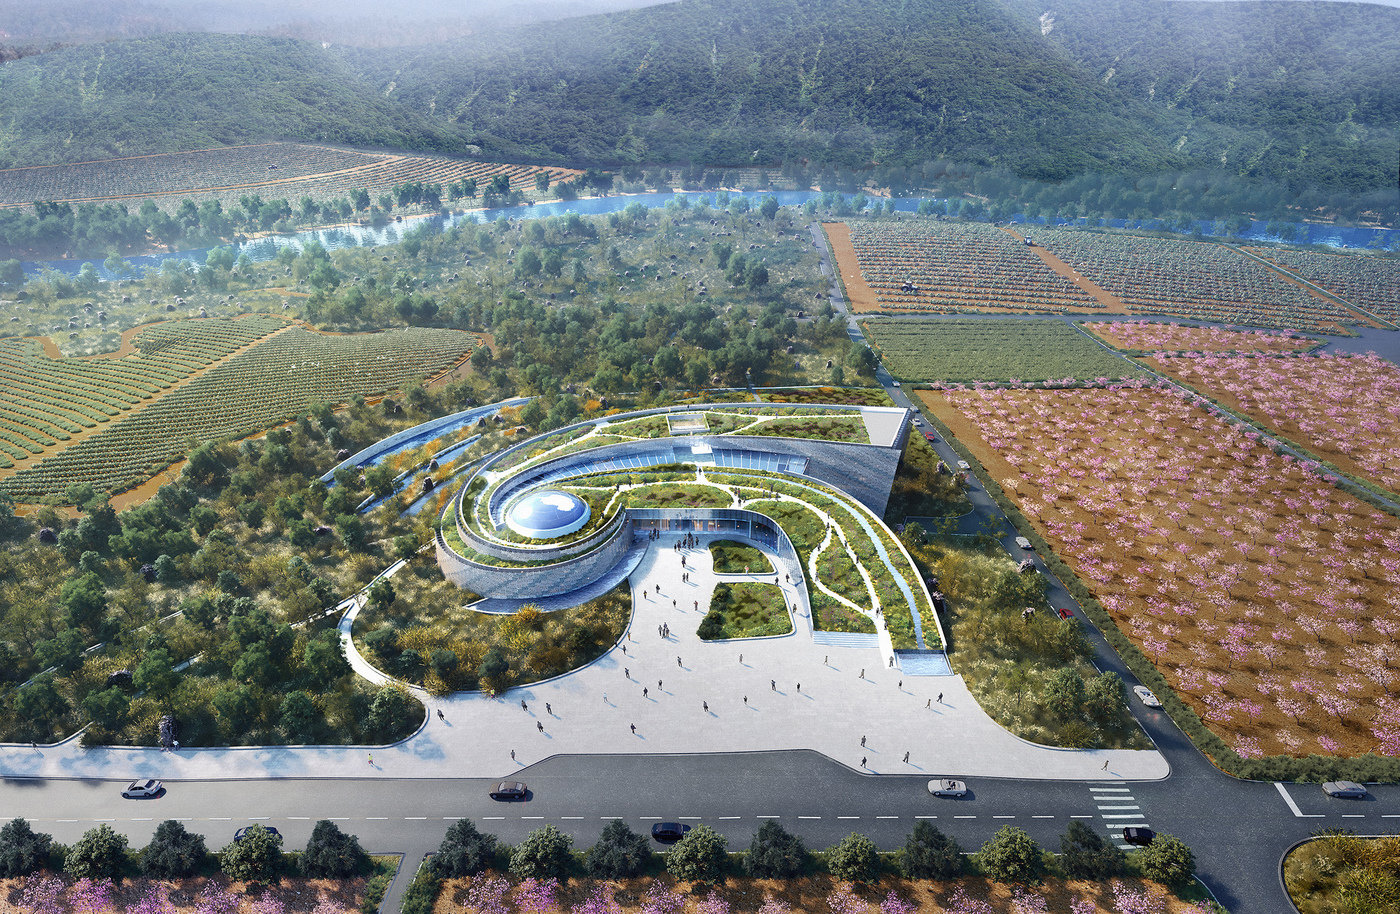 1 challenge museum design competition unbuilt south korea site rendering 1400 0x494x2500x1632 q85